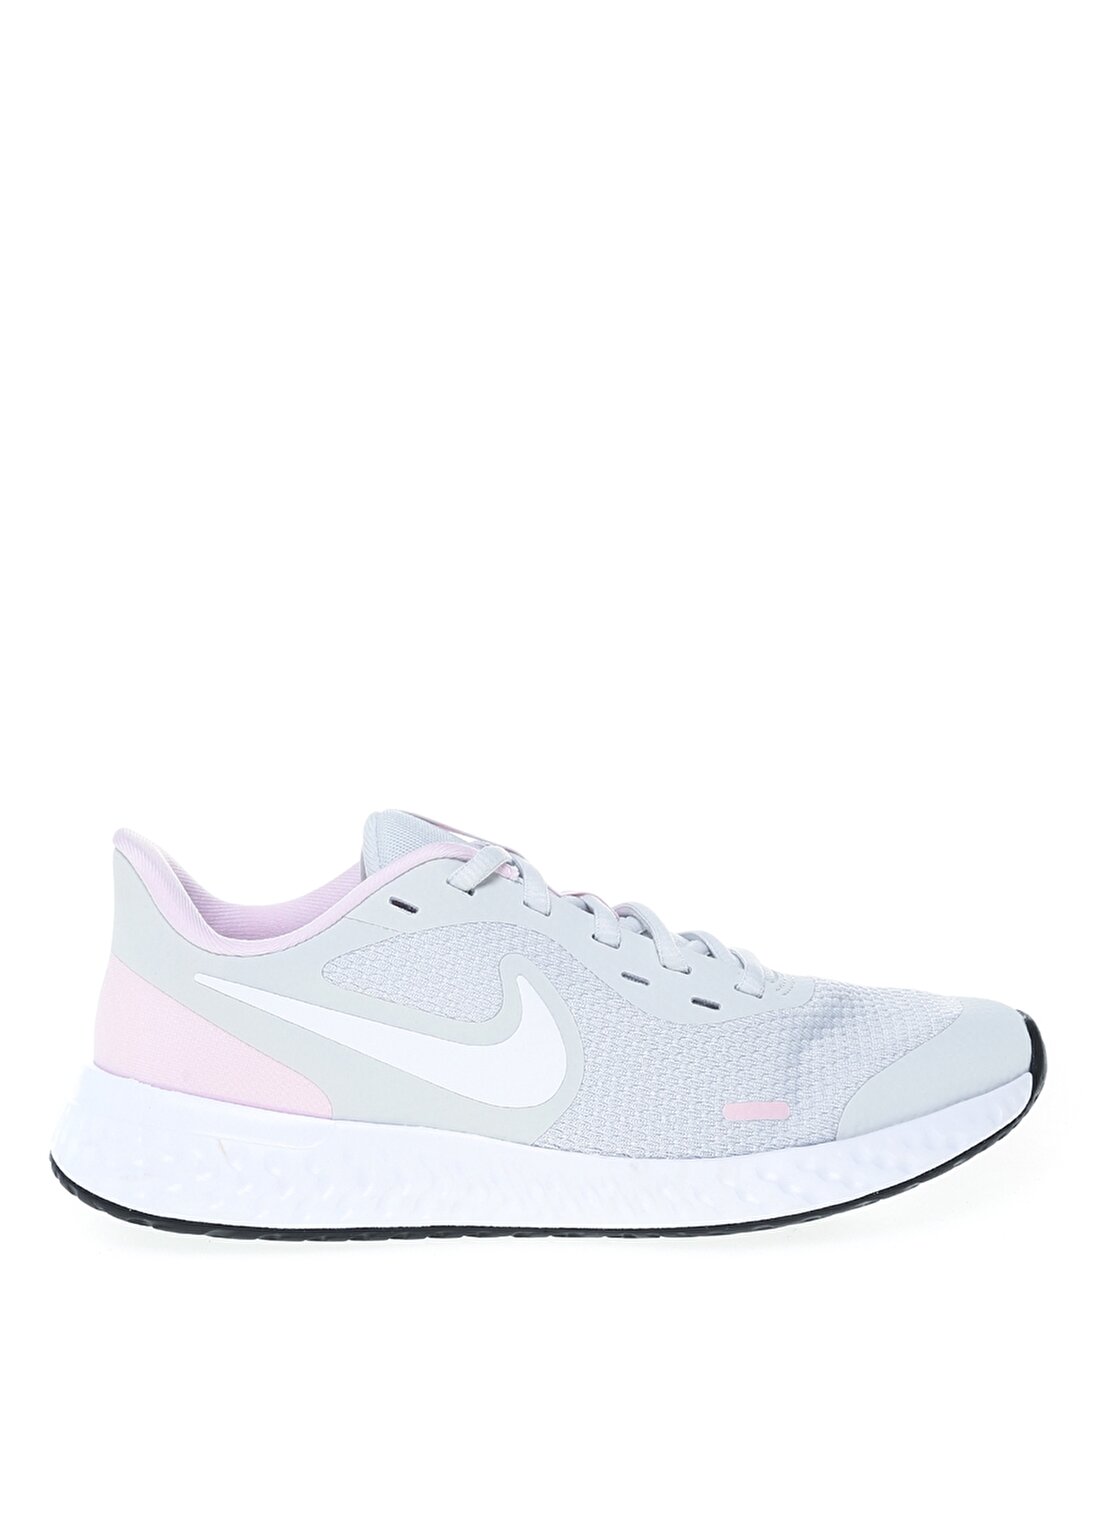 Nike BQ5671-021 Nıke Revolutıon 5 (Gs) Gri - Pembe Kız Çocuk Yürüyüş Ayakkabısı